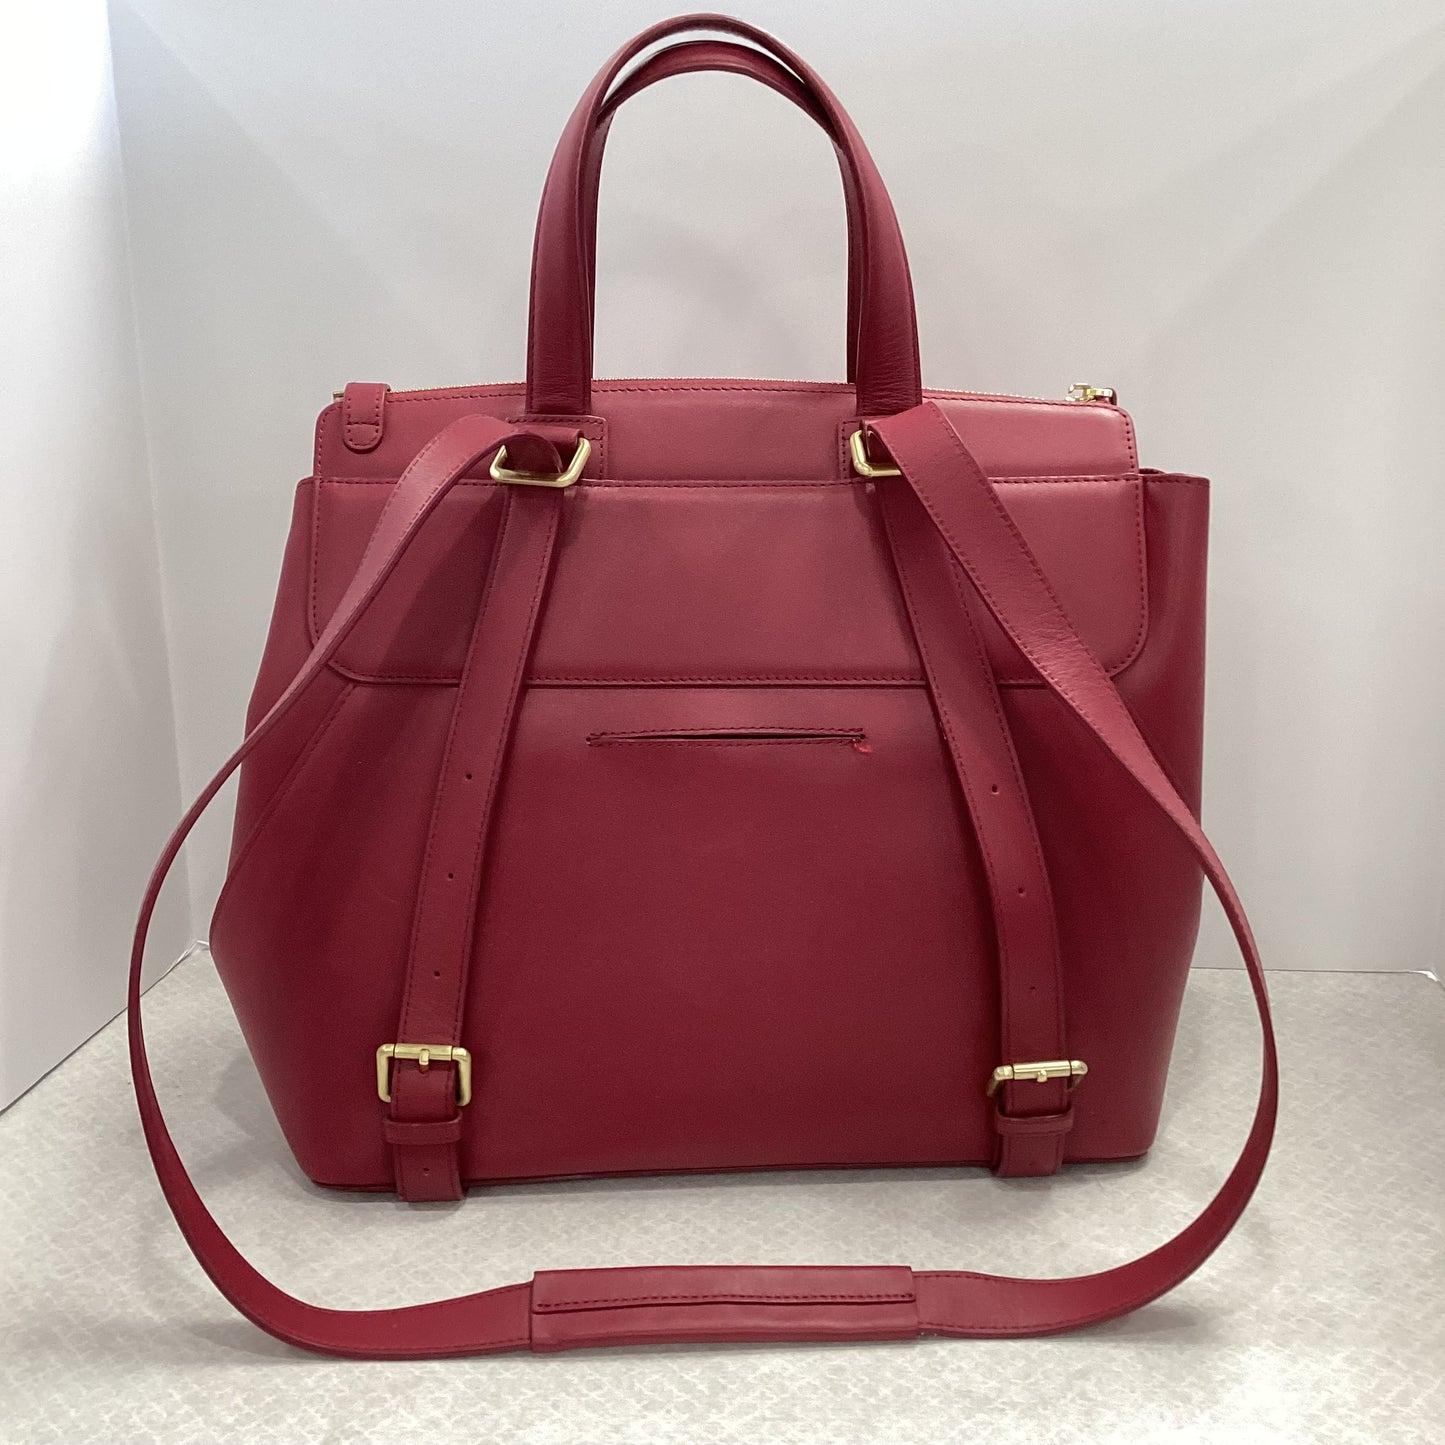 Handbag Designer By JEMMA  Size: Large